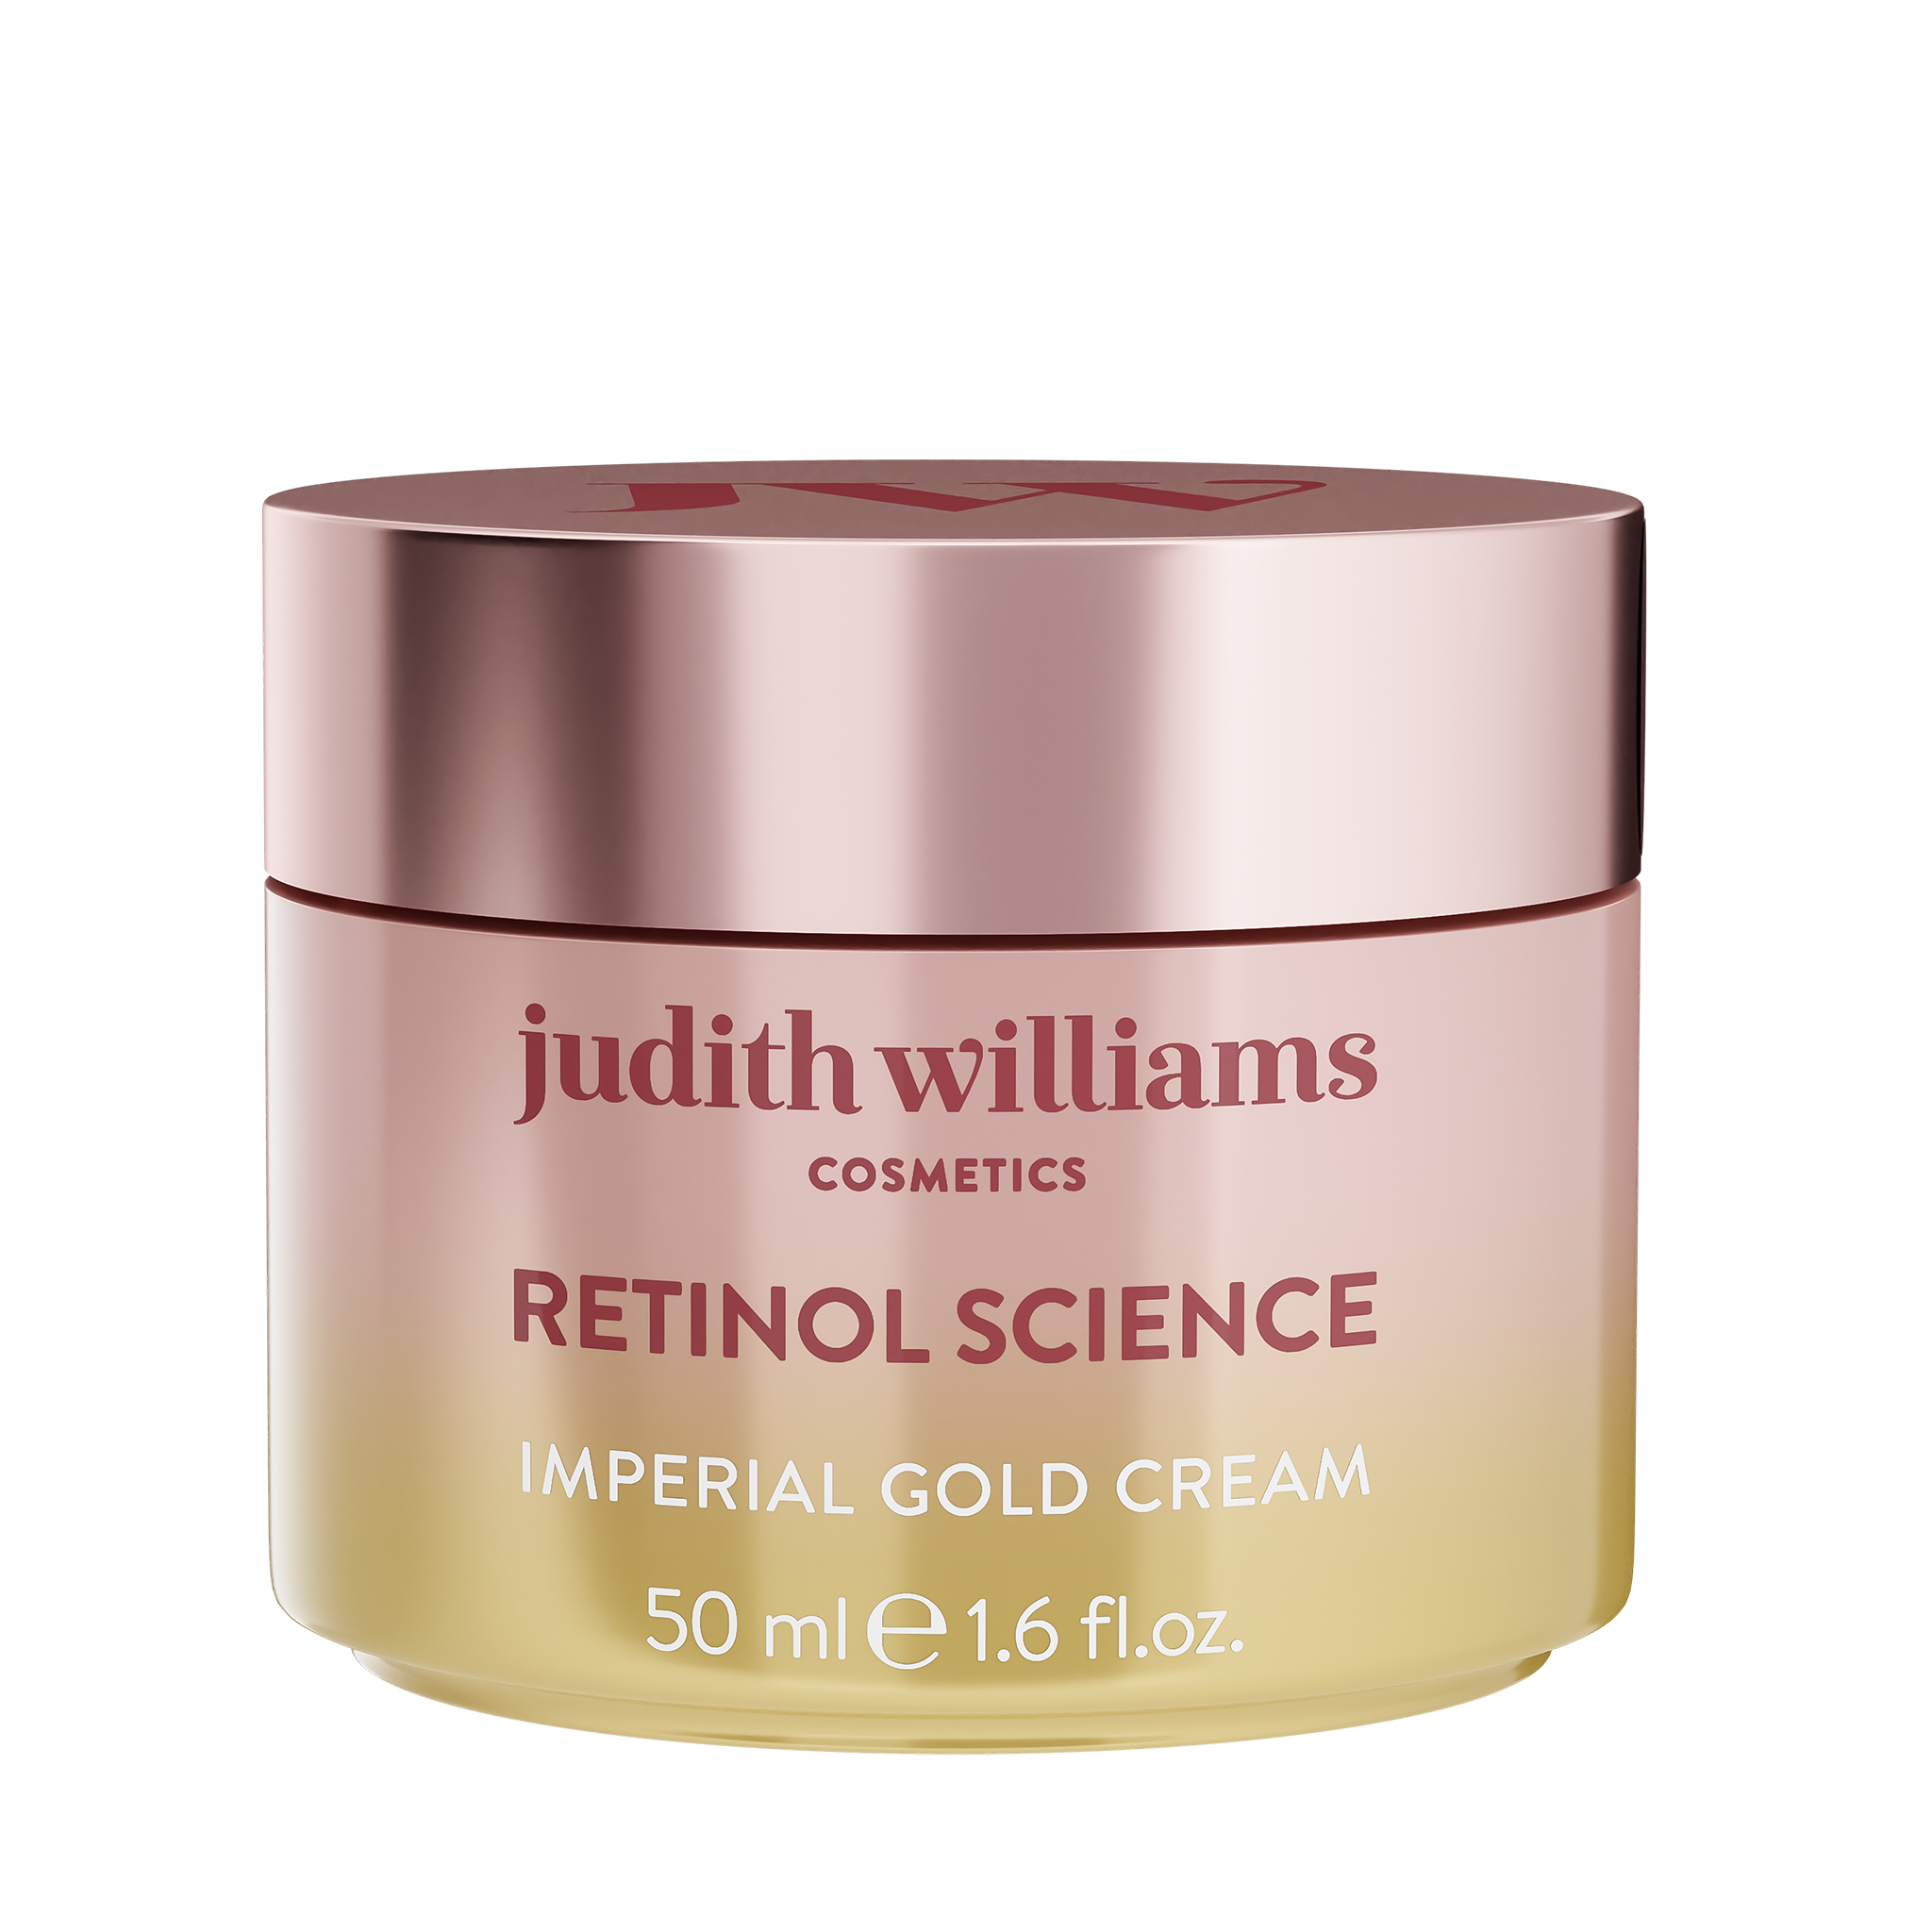 Retinol Science Imperial Gold Cream